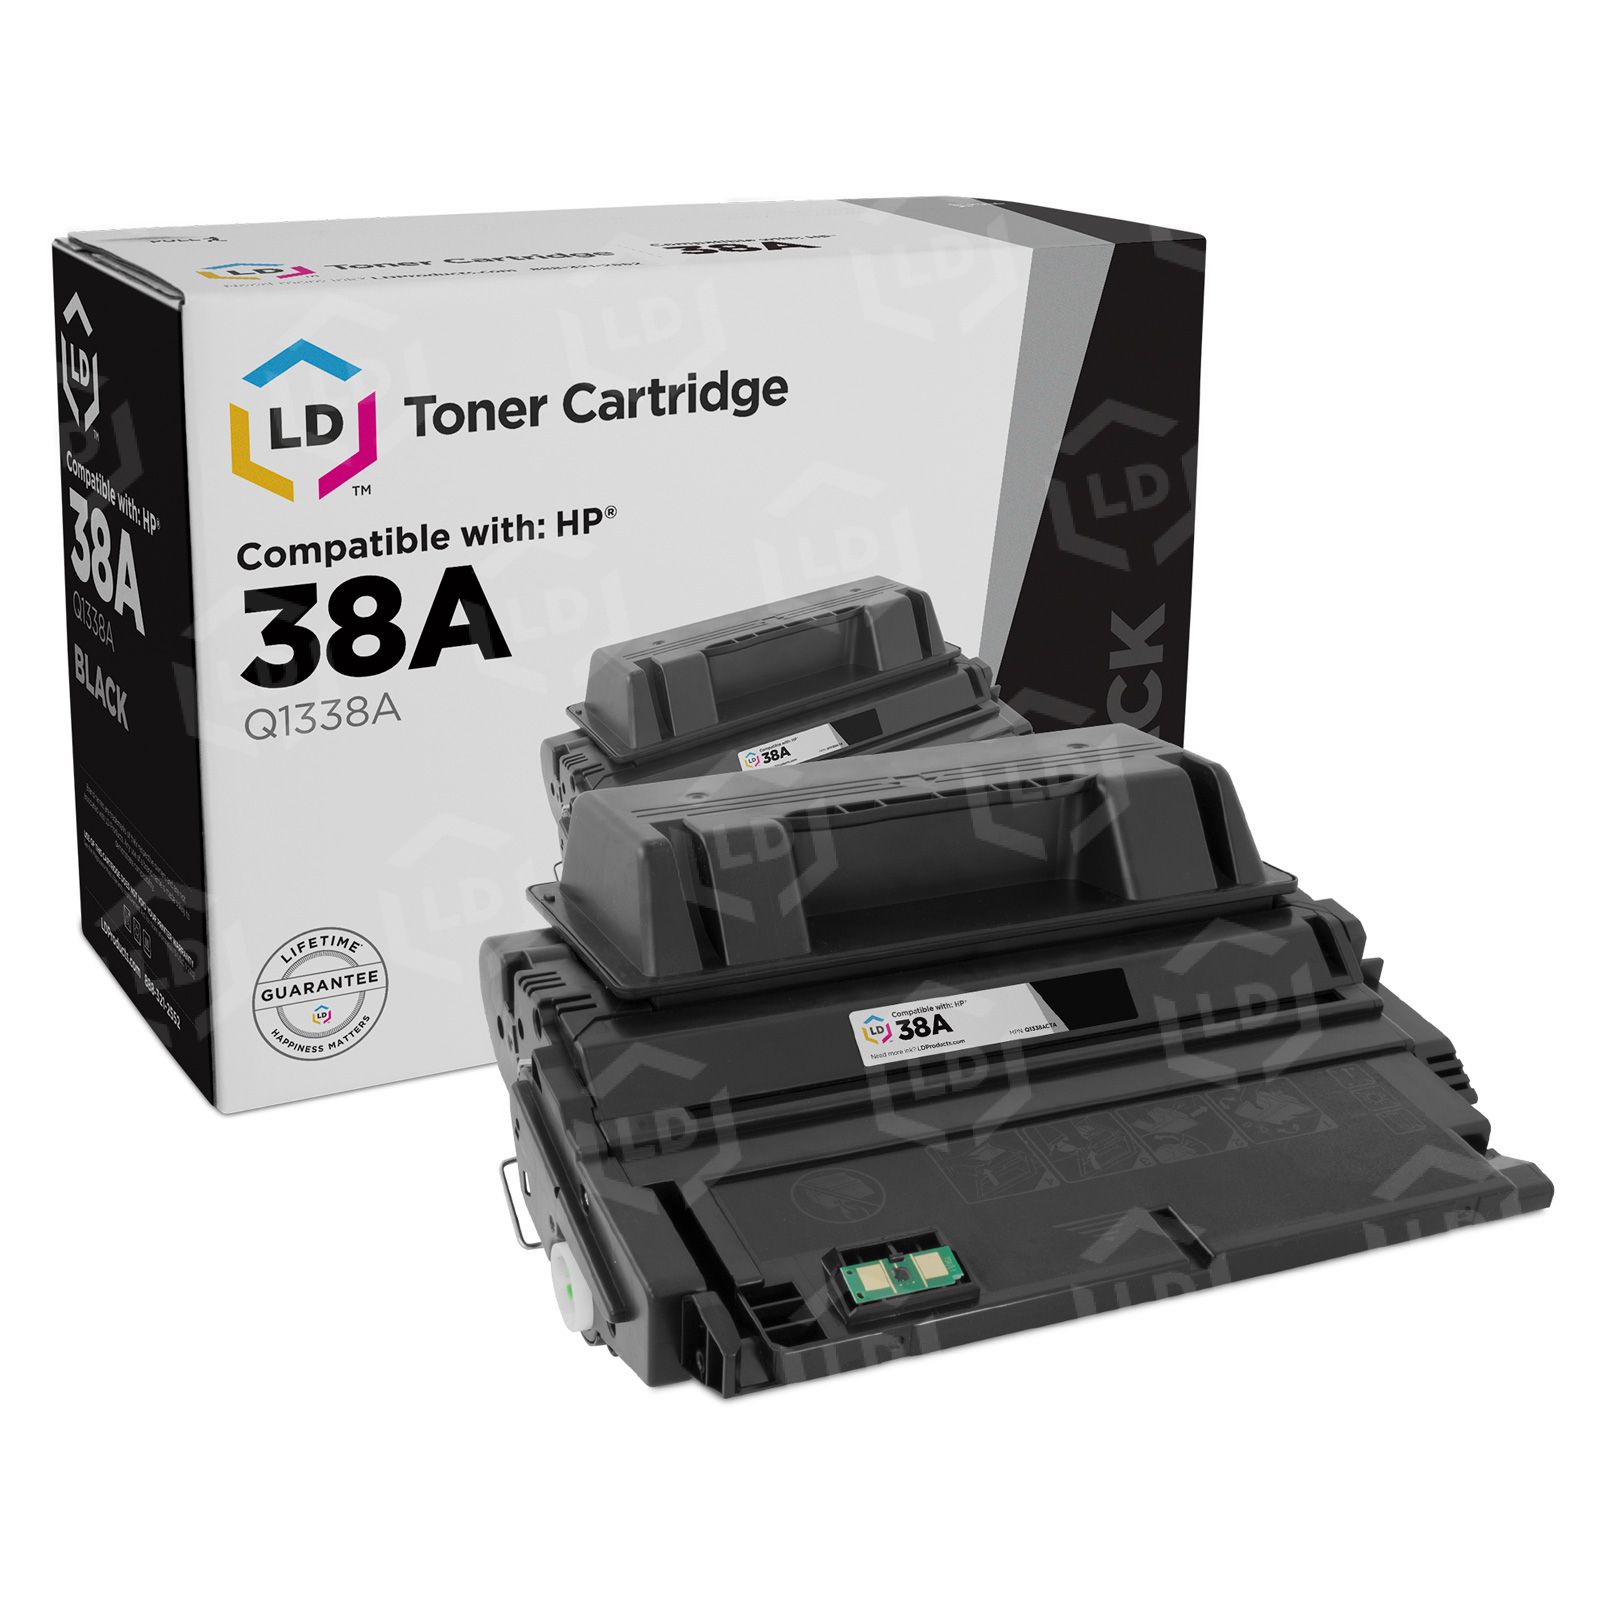 HP 38A Black Original LaserJet Toner Cartridge (Q1338A